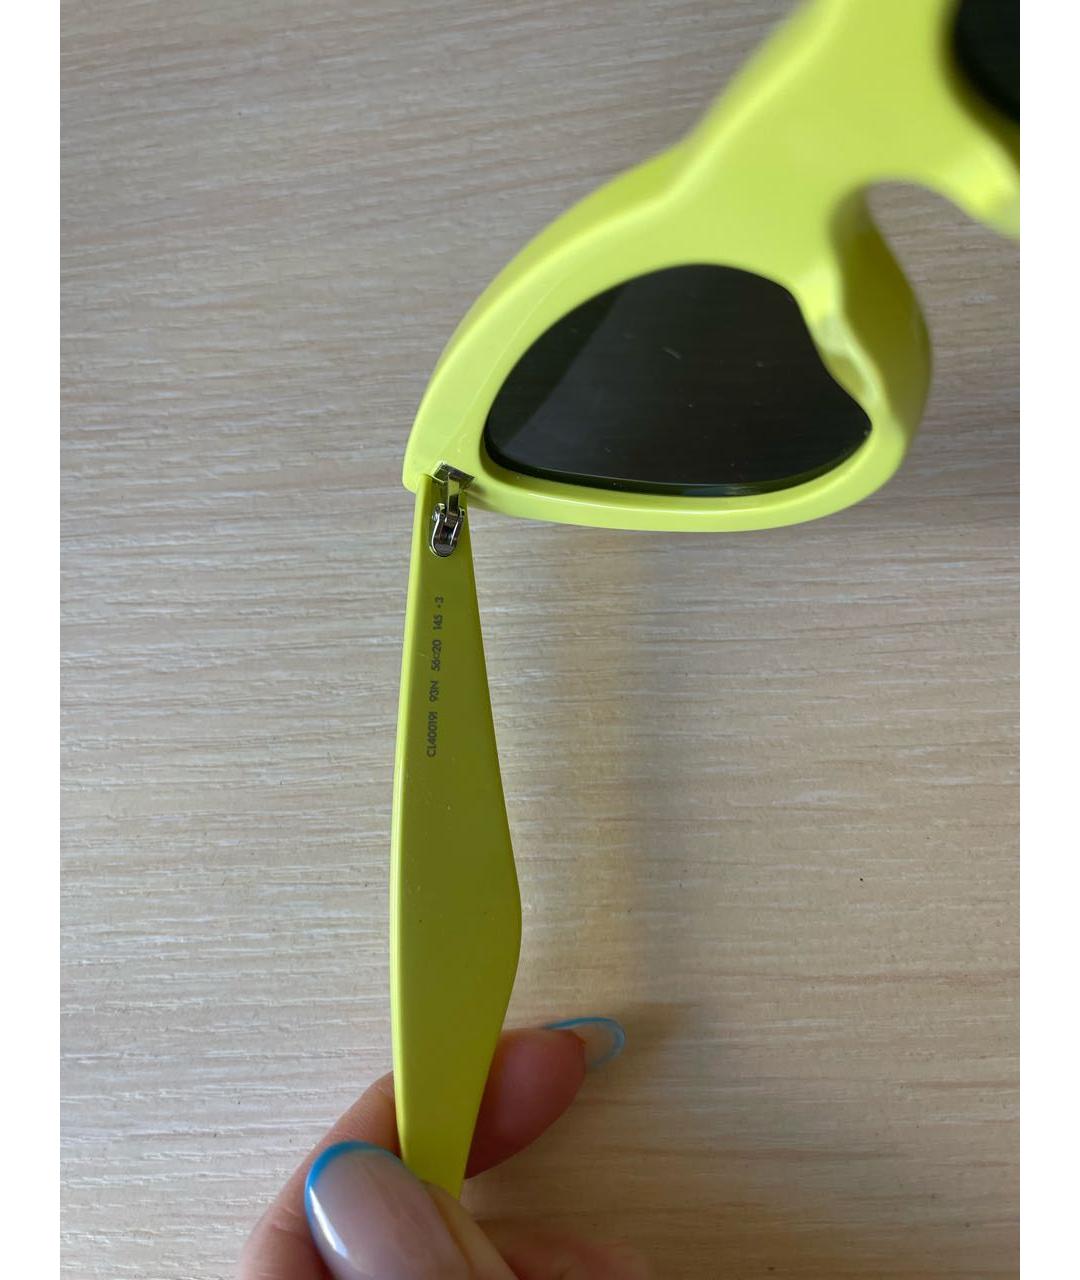 CELINE PRE-OWNED Желтые пластиковые солнцезащитные очки, фото 4